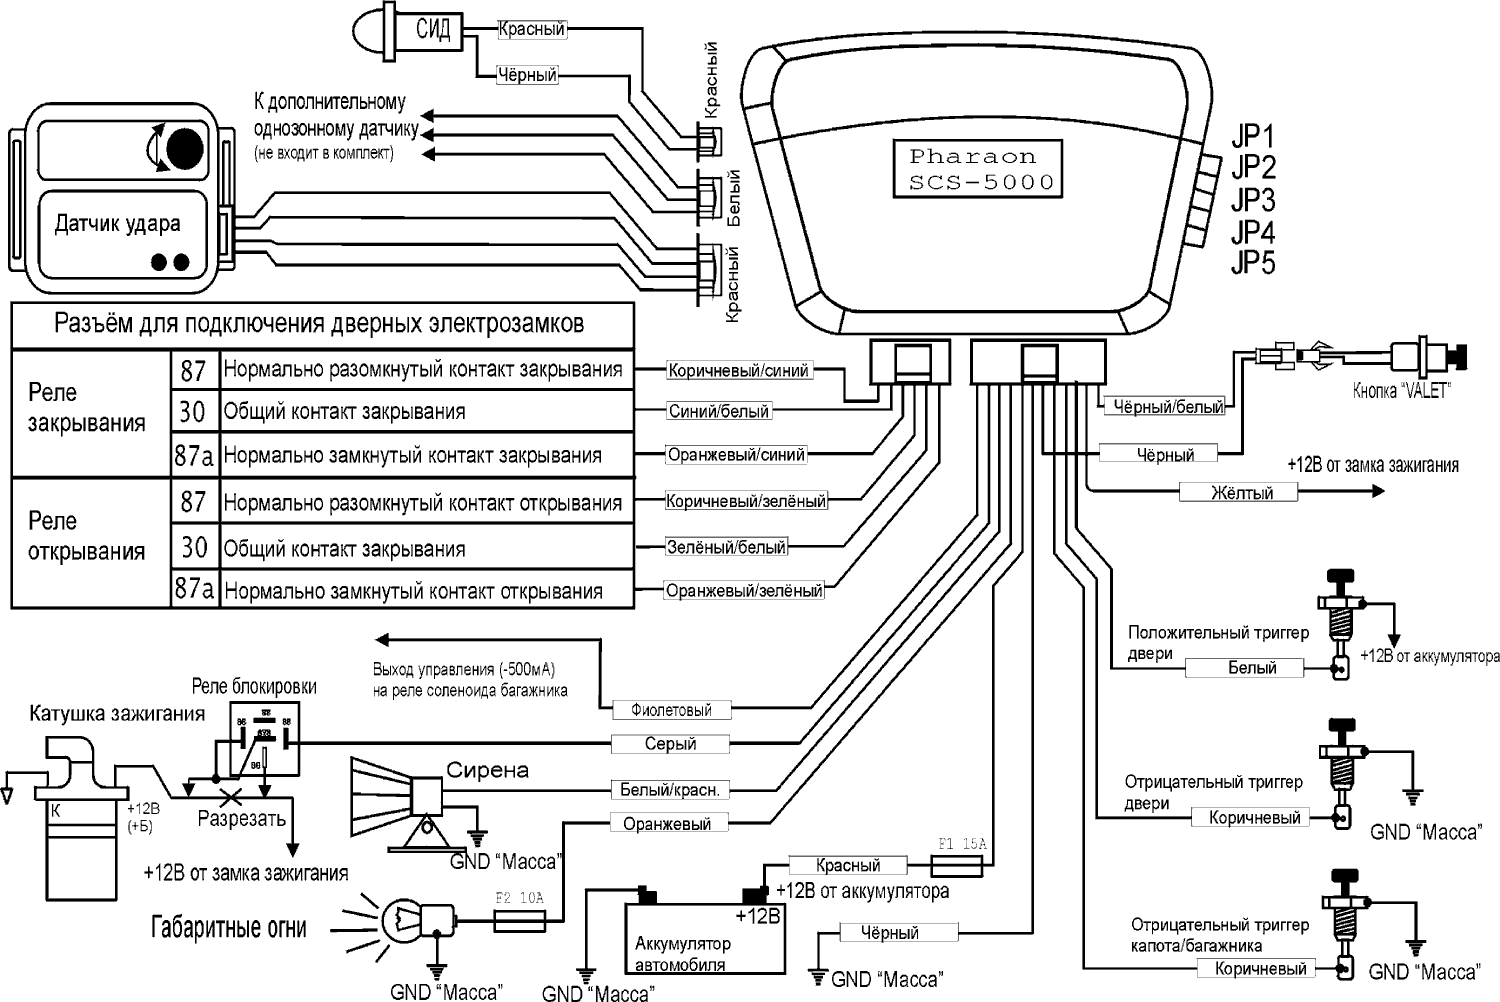 PHARAON SCS-5000 - схема подключения